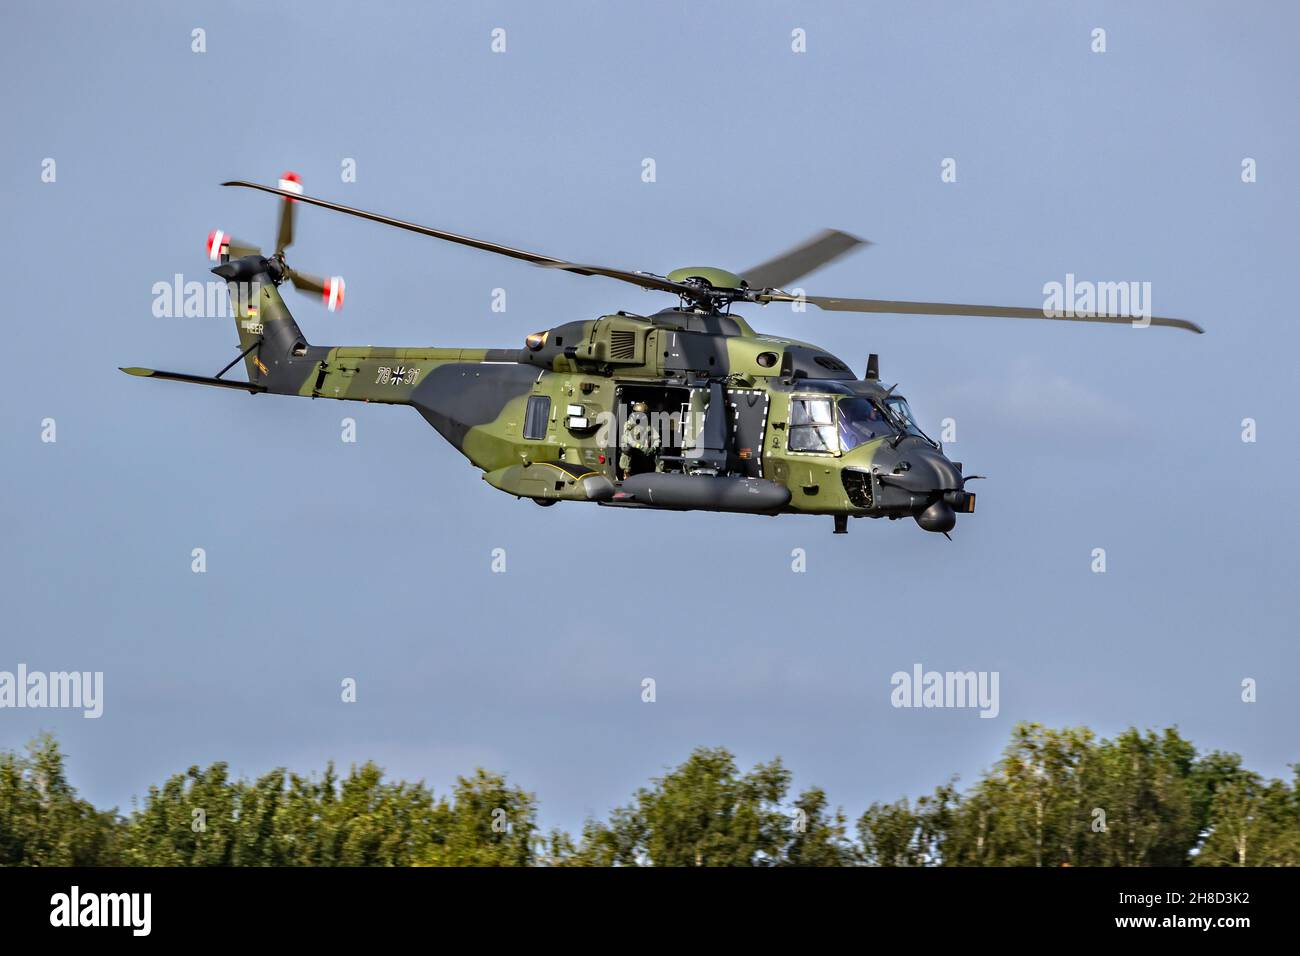 L'Esercito tedesco NH90 trasporta l'elicottero che decollo dalla base aerea Kleine-Brogel, Belgio - 13 settembre 2021 Foto Stock